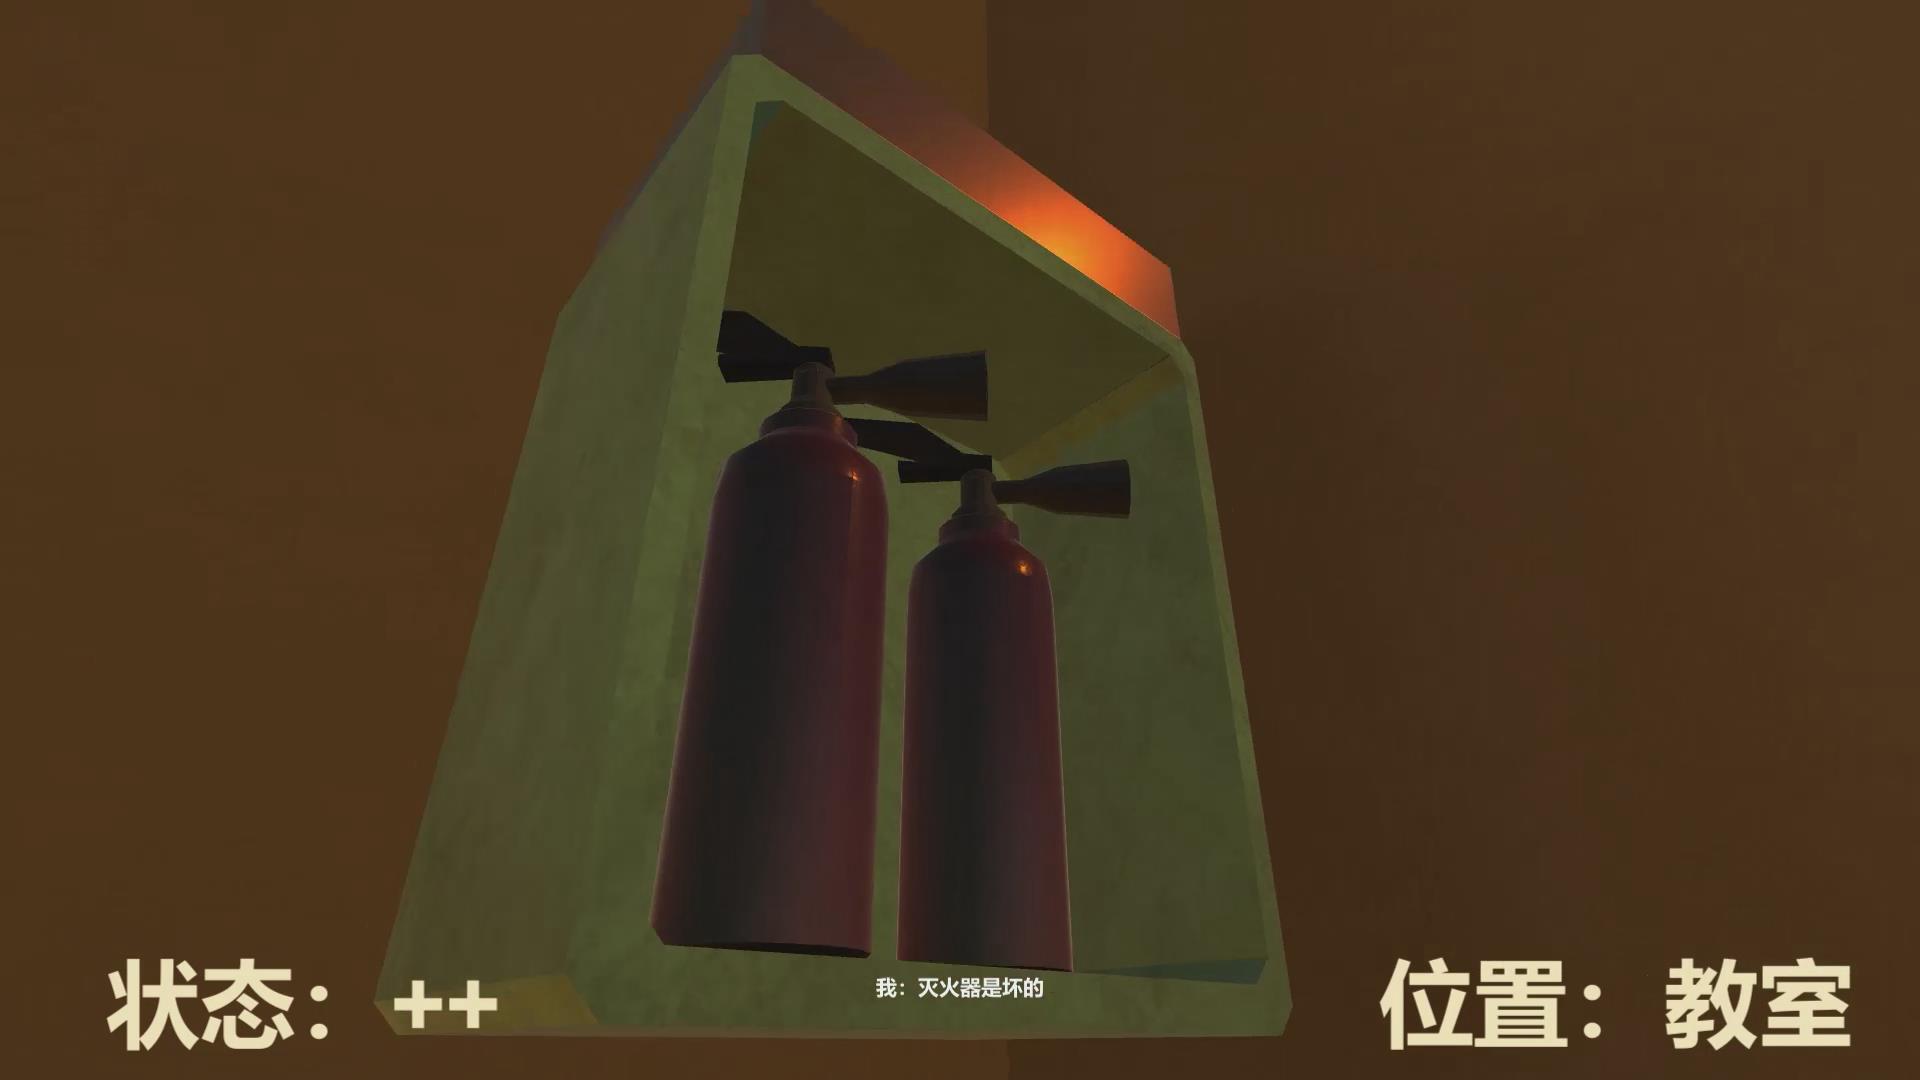 虚拟现实与游戏竞赛作品——基于Unity3D的校园火灾逃生演习平台